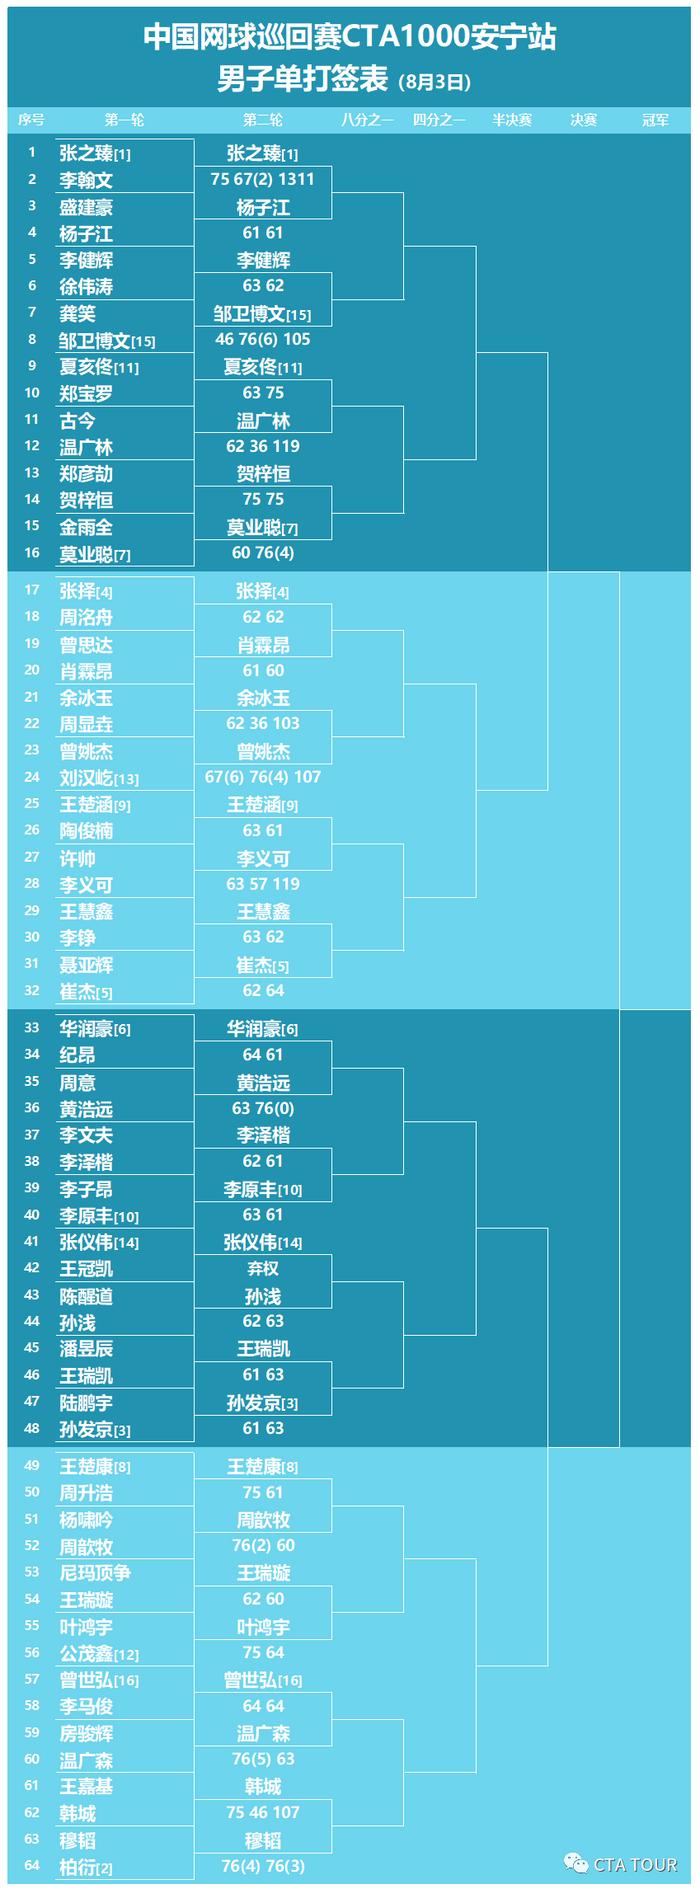 2020中国网球巡回赛安宁站第三日好戏连台 张之臻首秀惊险过关